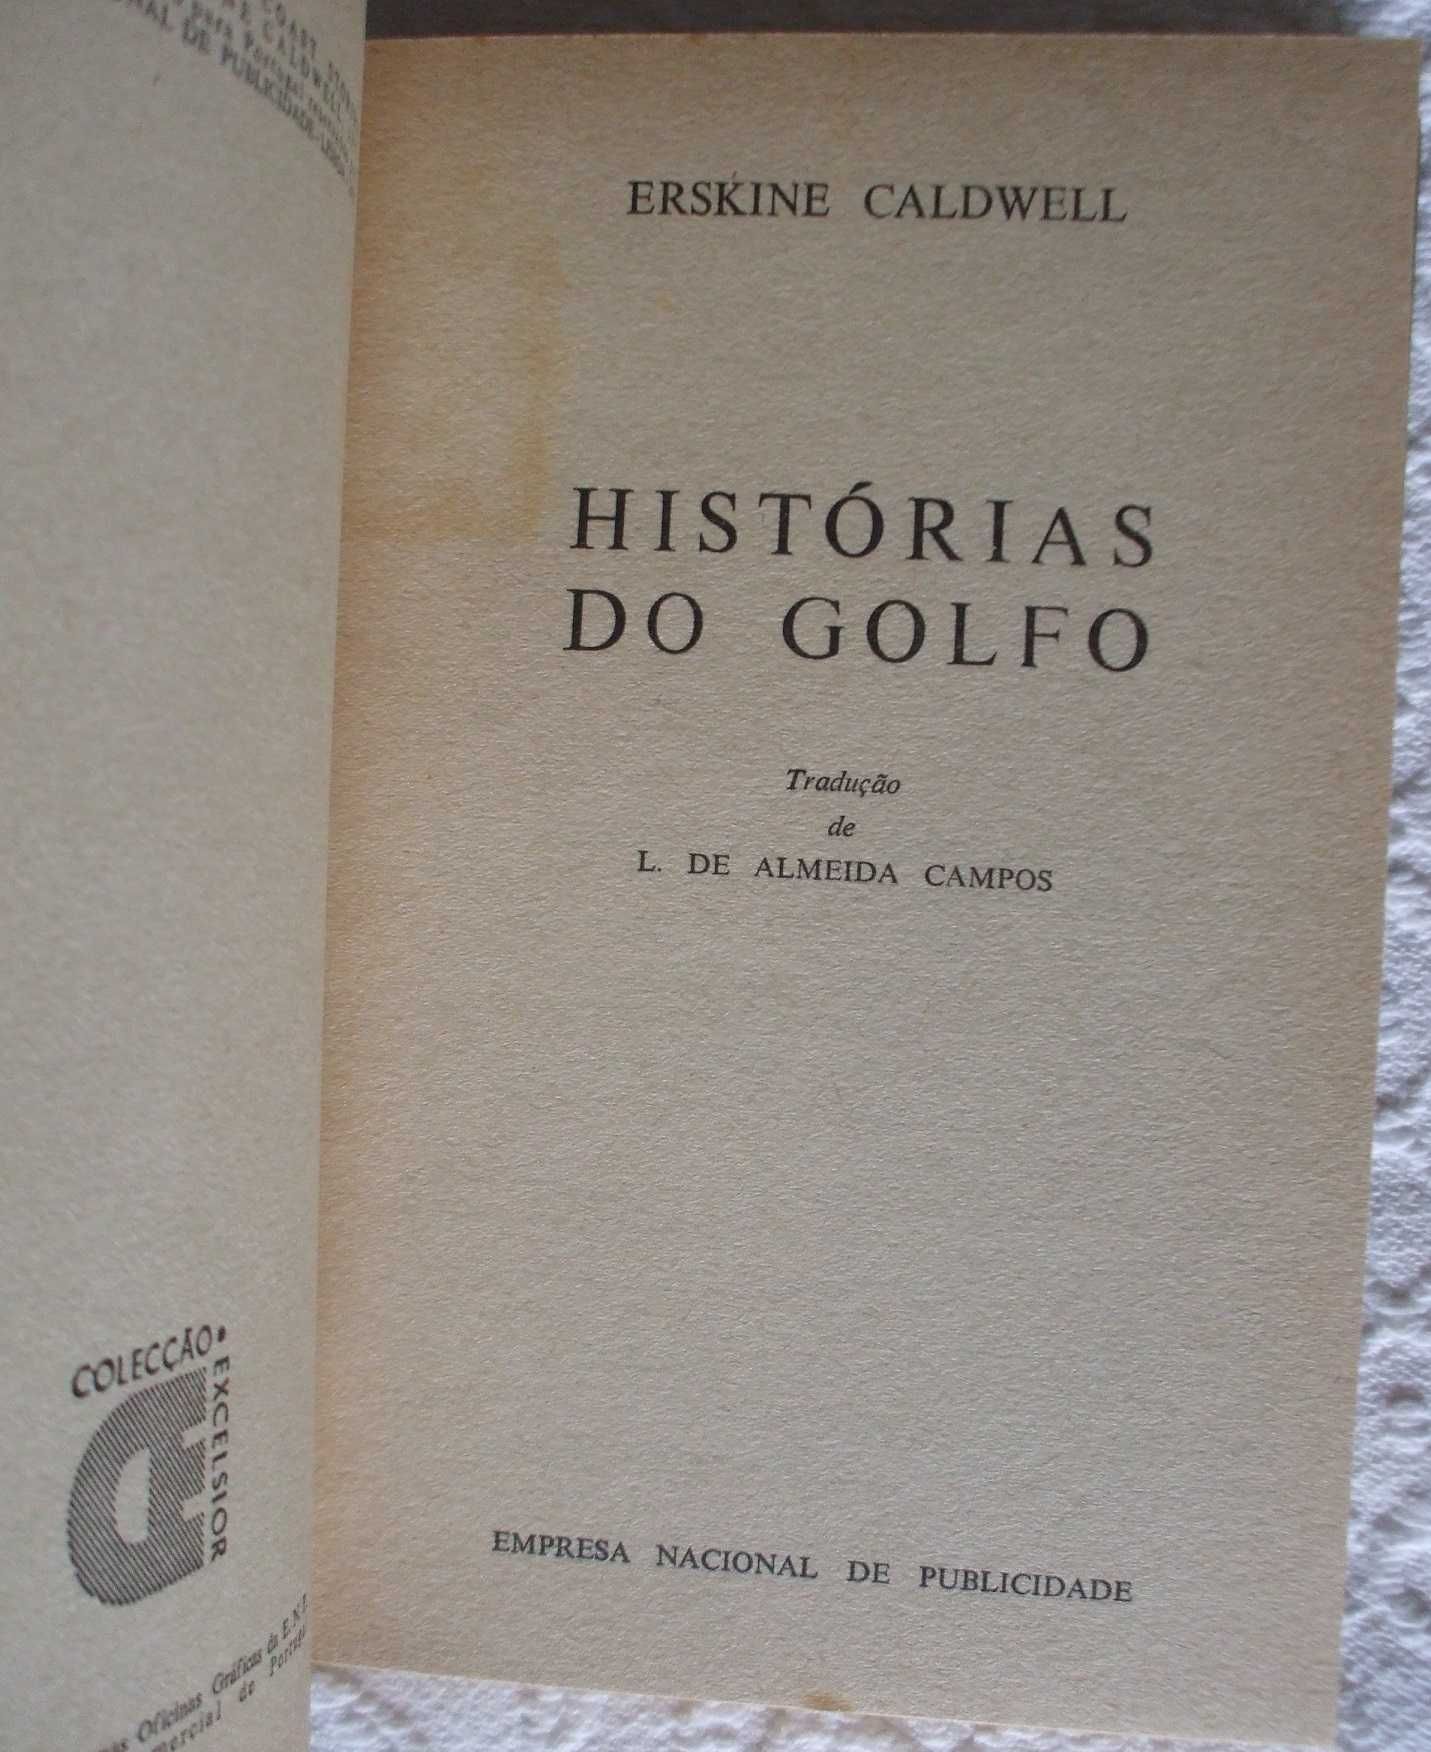 Histórias do Golfo, Erskine Caldwell